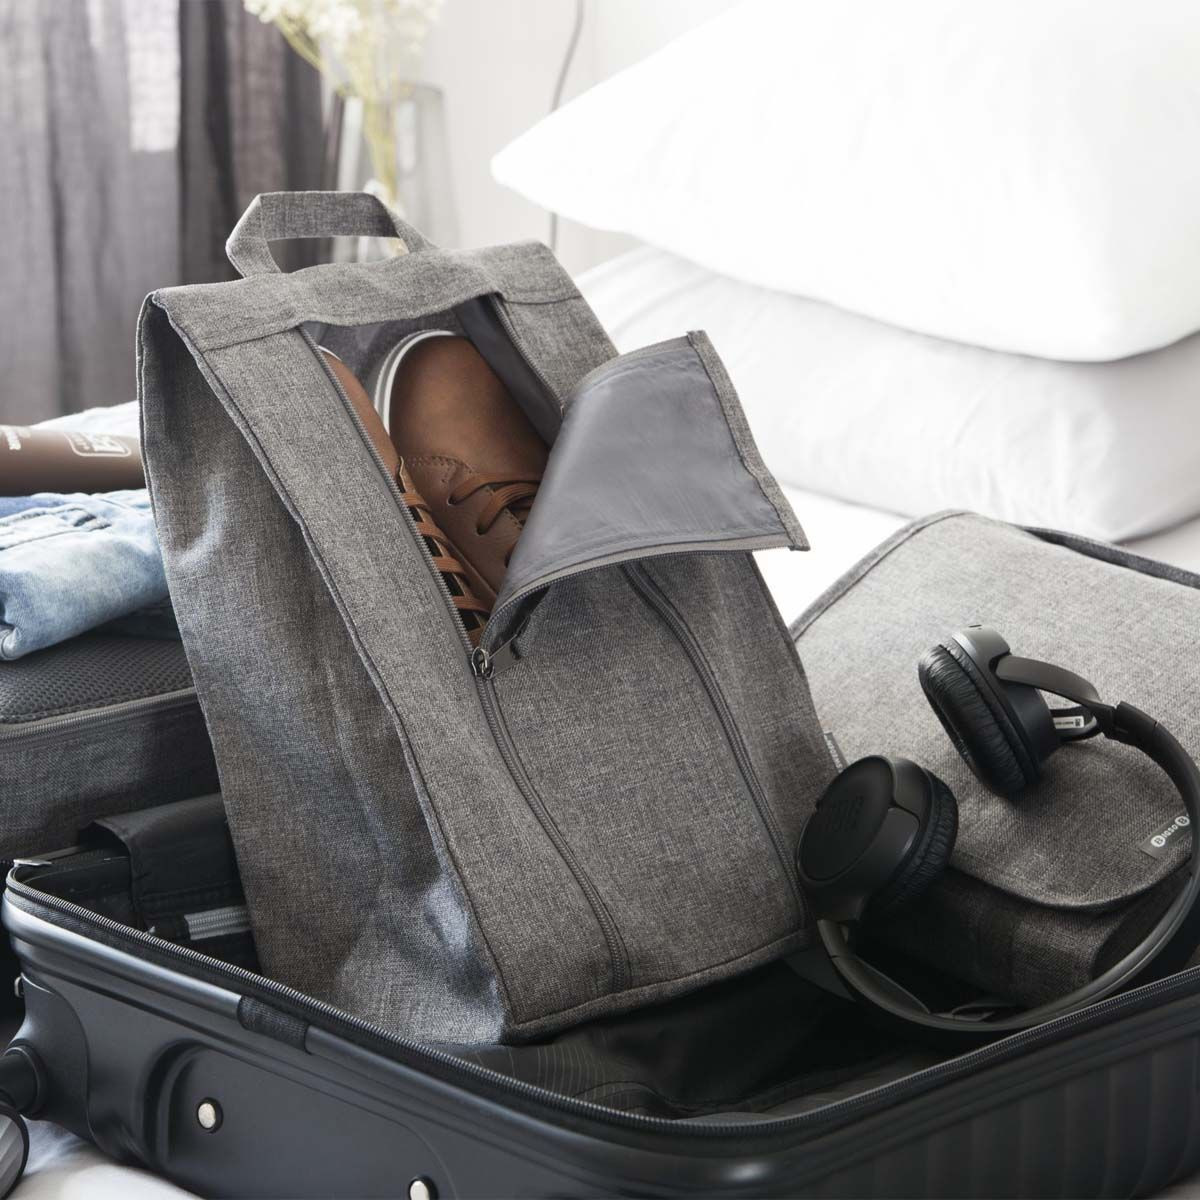 Comment optimiser le rangement de votre valise pour gagner de la place ? -  ON RANGE TOUT